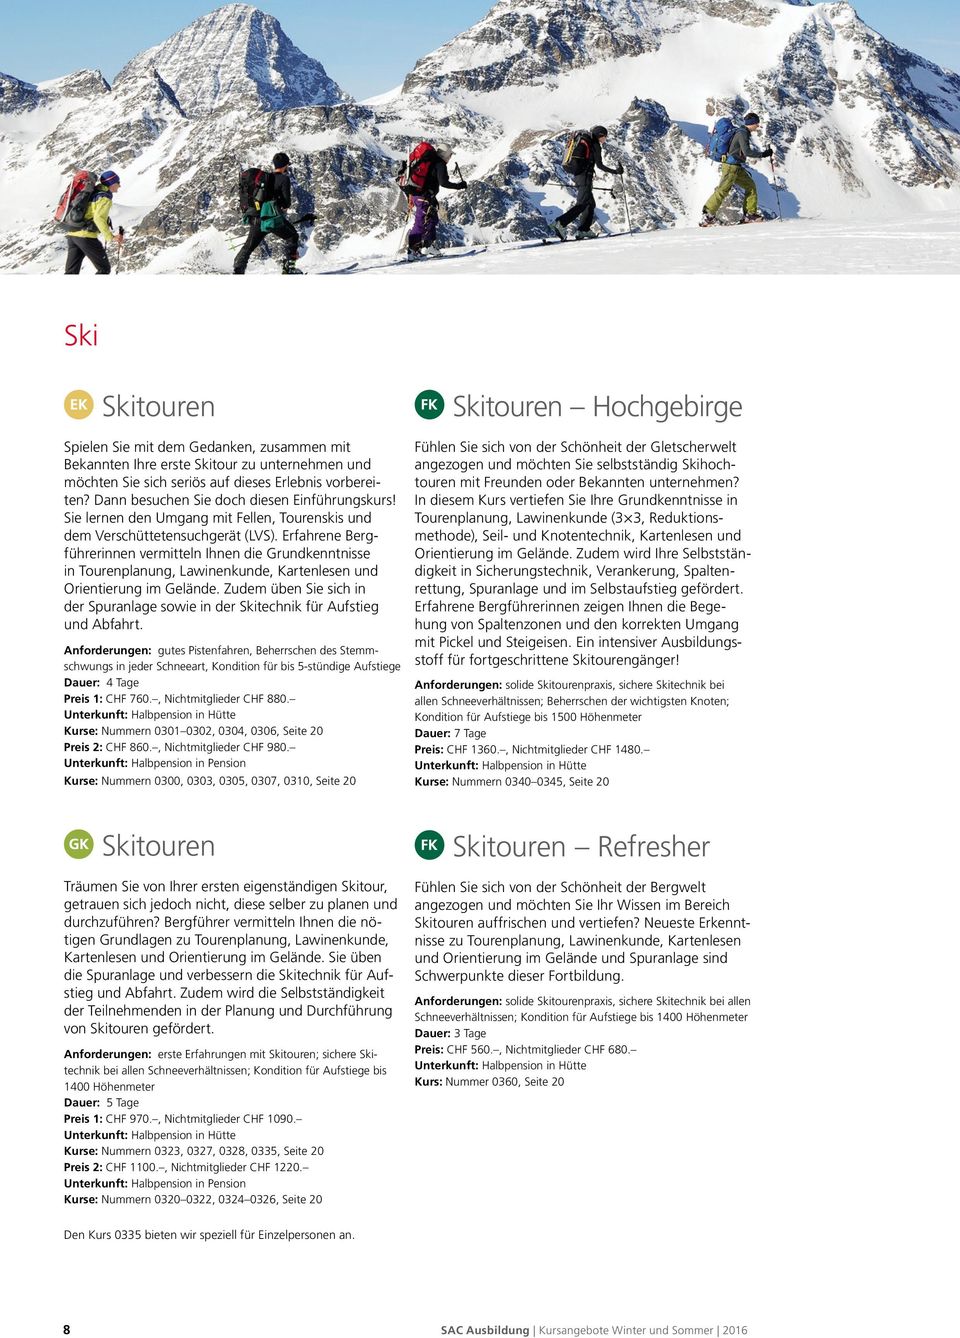 Erfahrene Bergführerinnen vermitteln Ihnen die Grundkenntnisse in Tourenplanung, Lawinenkunde, Kartenlesen und Orientierung im Gelände.